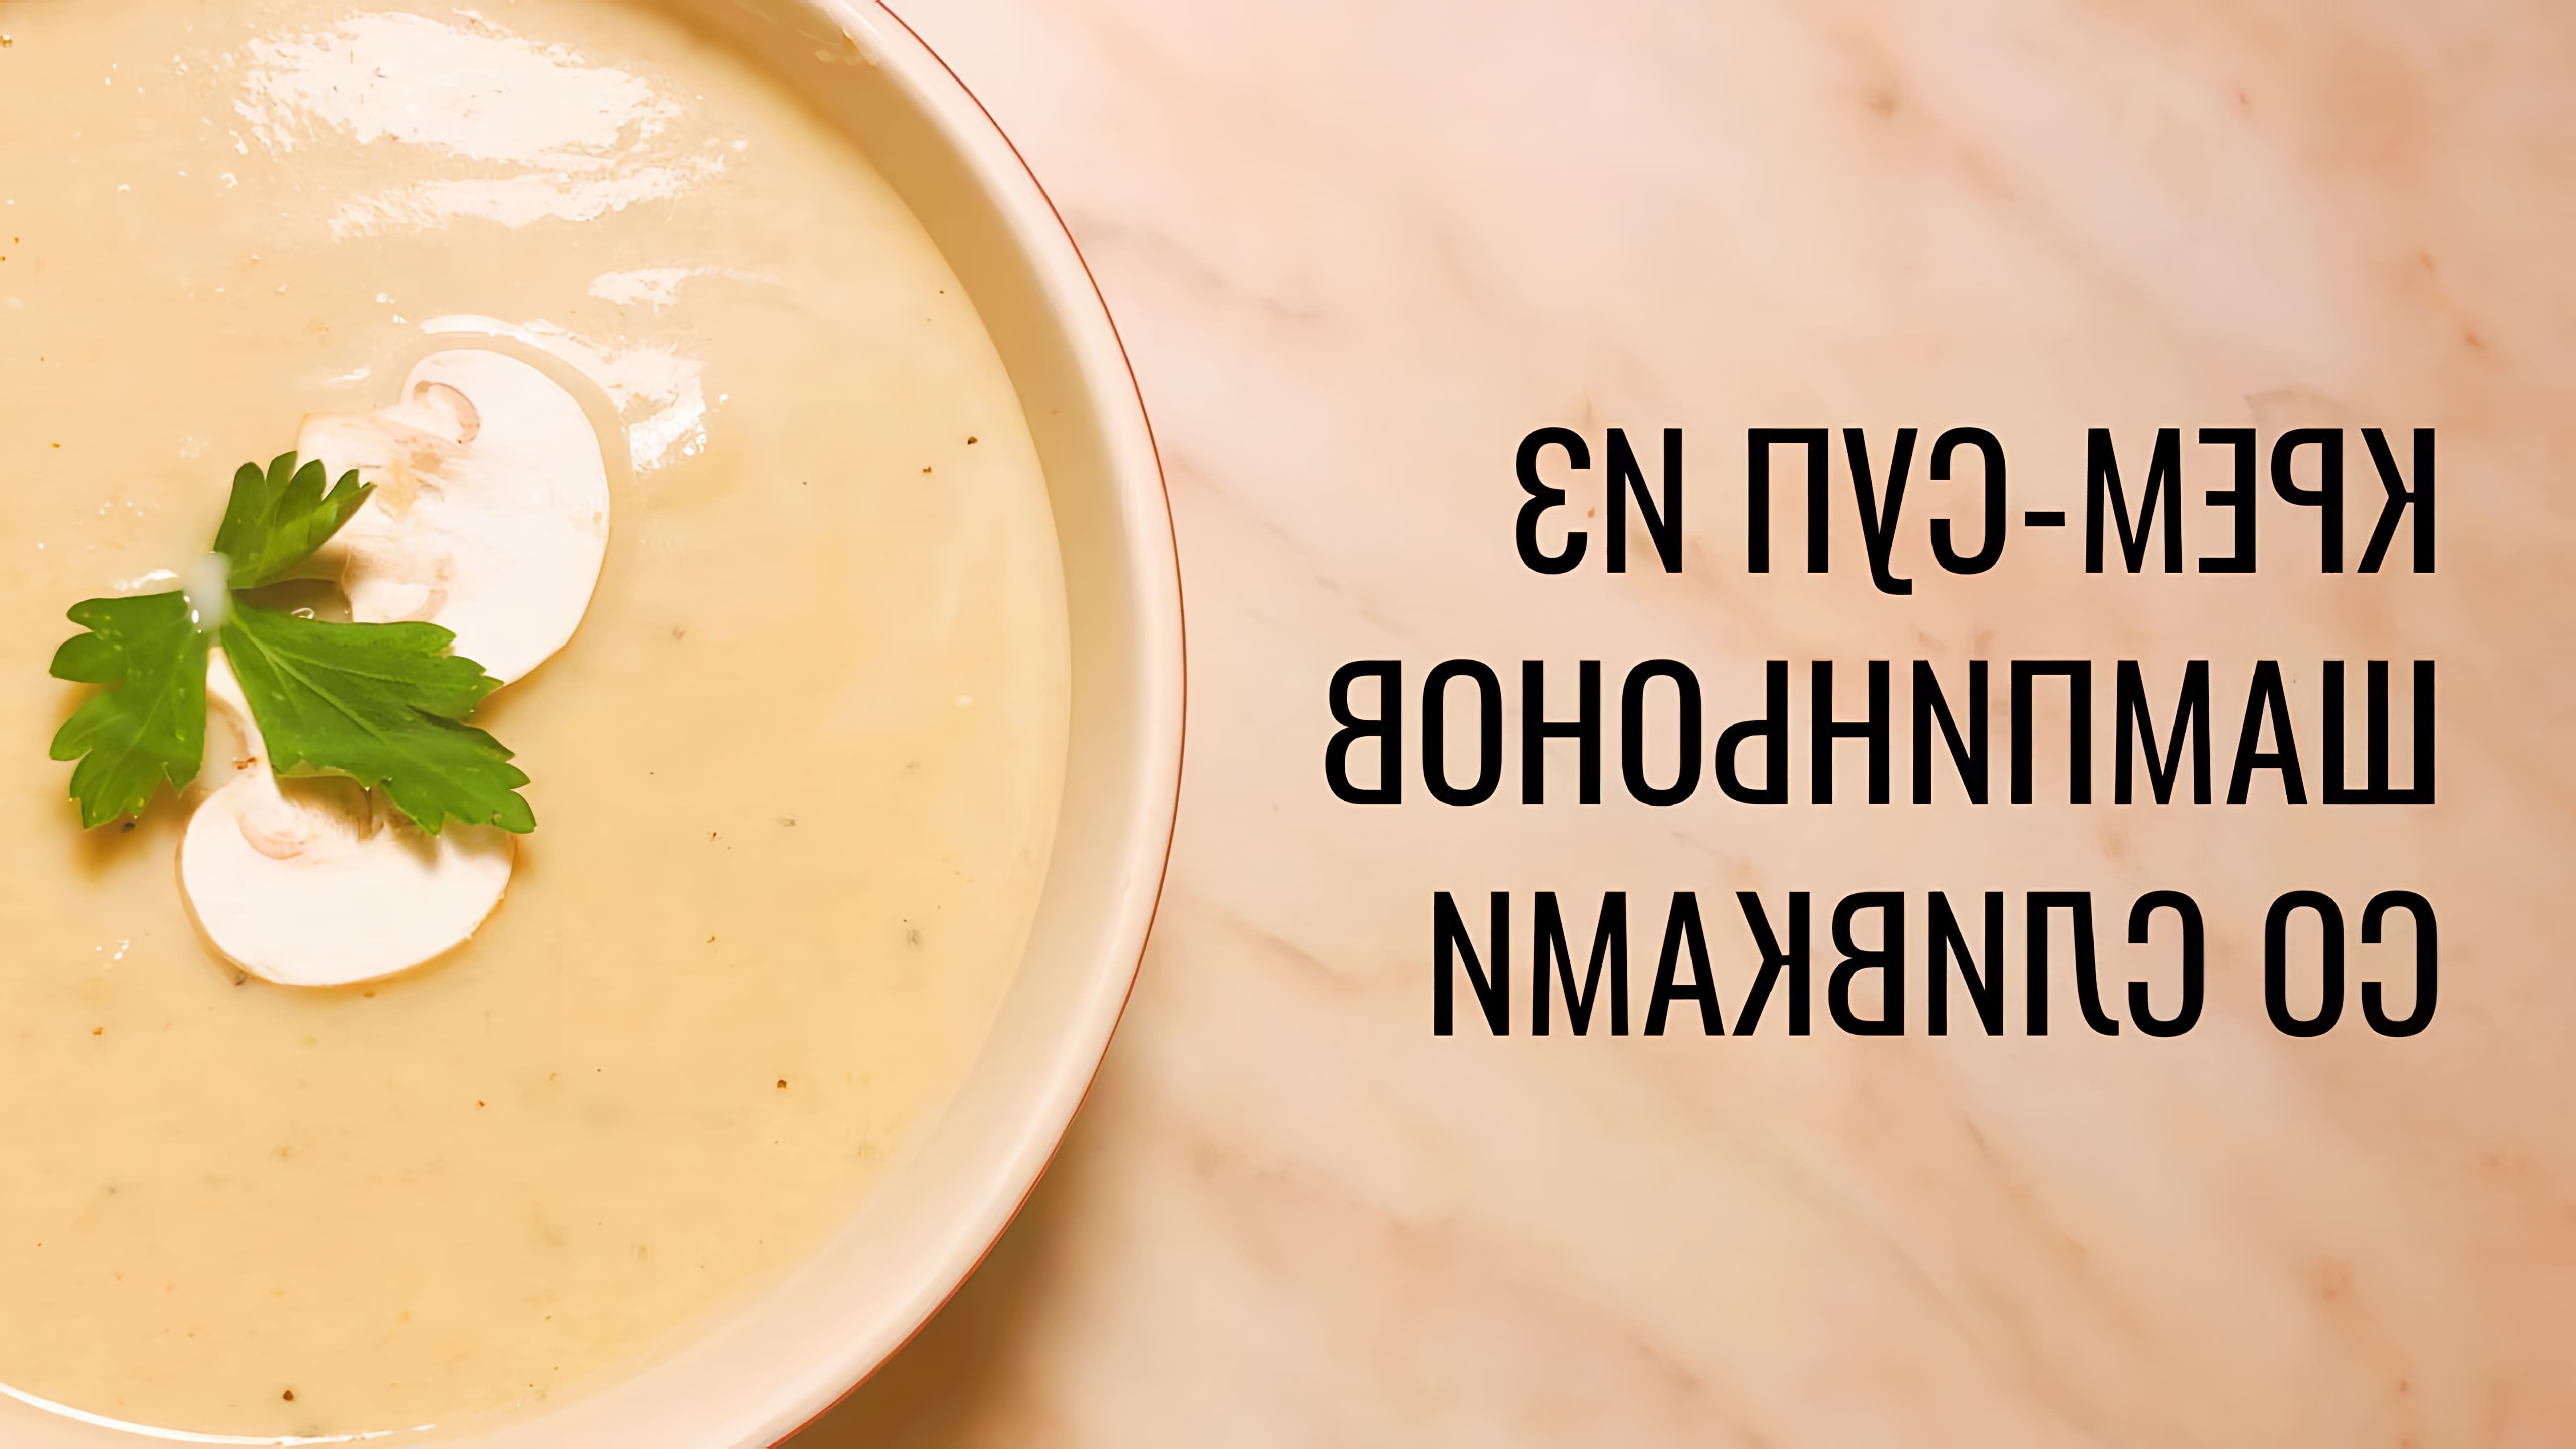 Крем-суп из шампиньонов со сливками - это вкусное и питательное блюдо, которое можно приготовить в домашних условиях